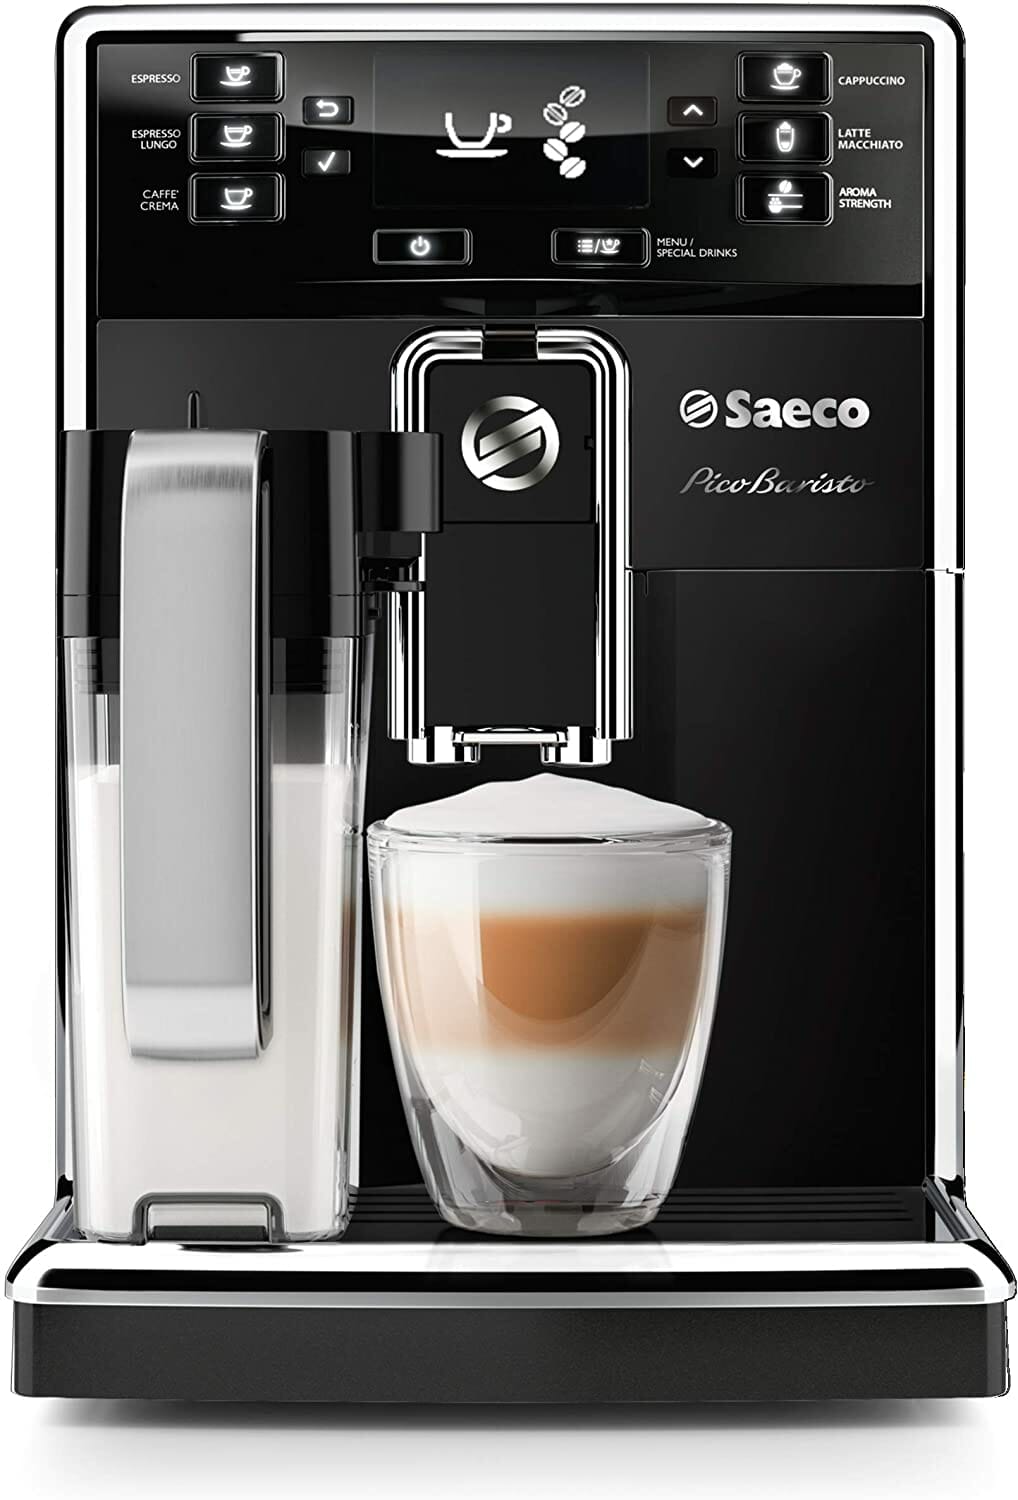 Saeco PicoBaristo Super Automatic Espresso Machine HD892737 Review